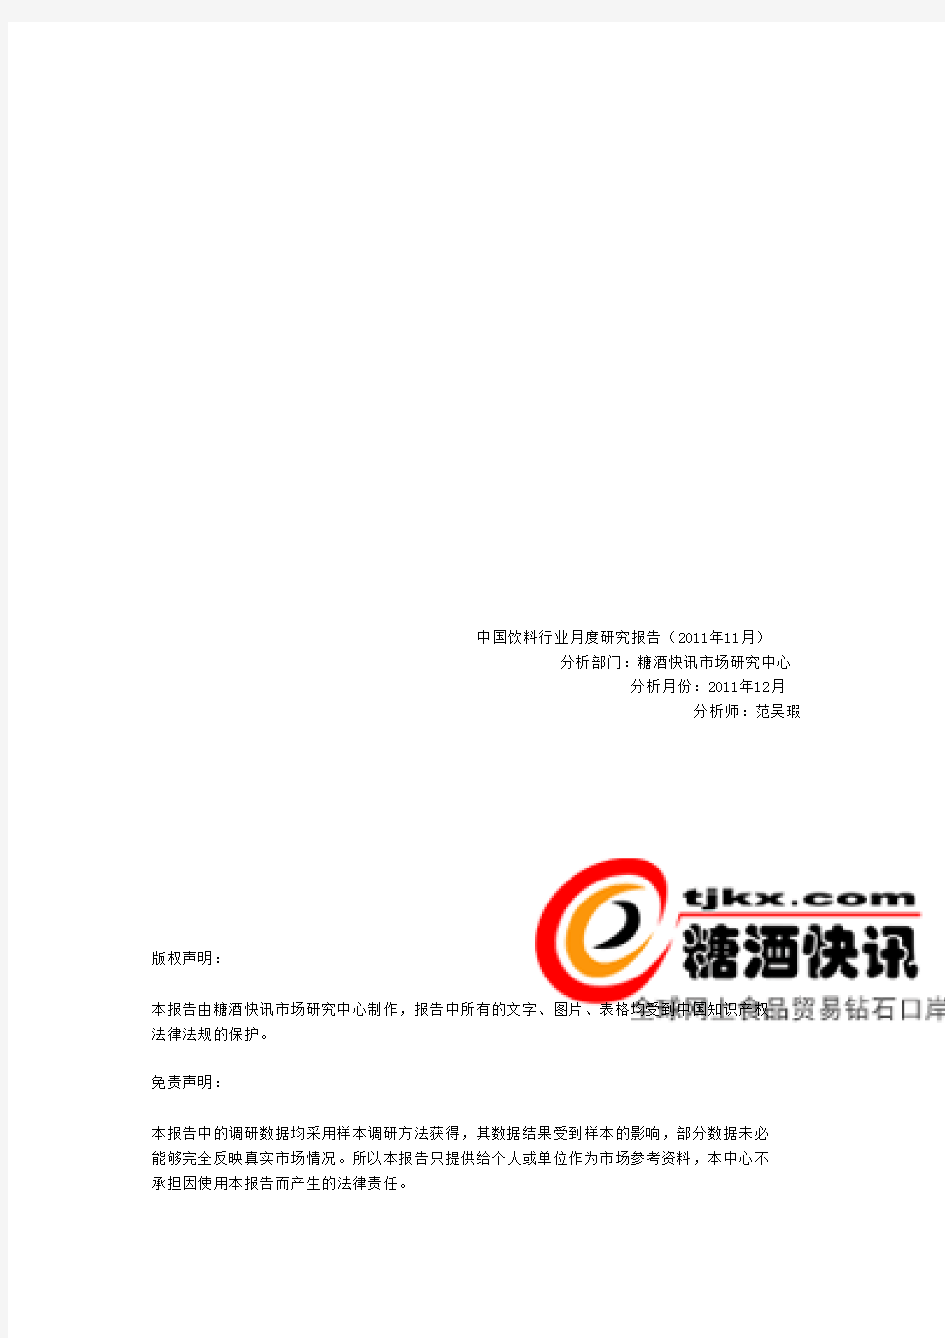 2011年中国饮料行业市场研究报告